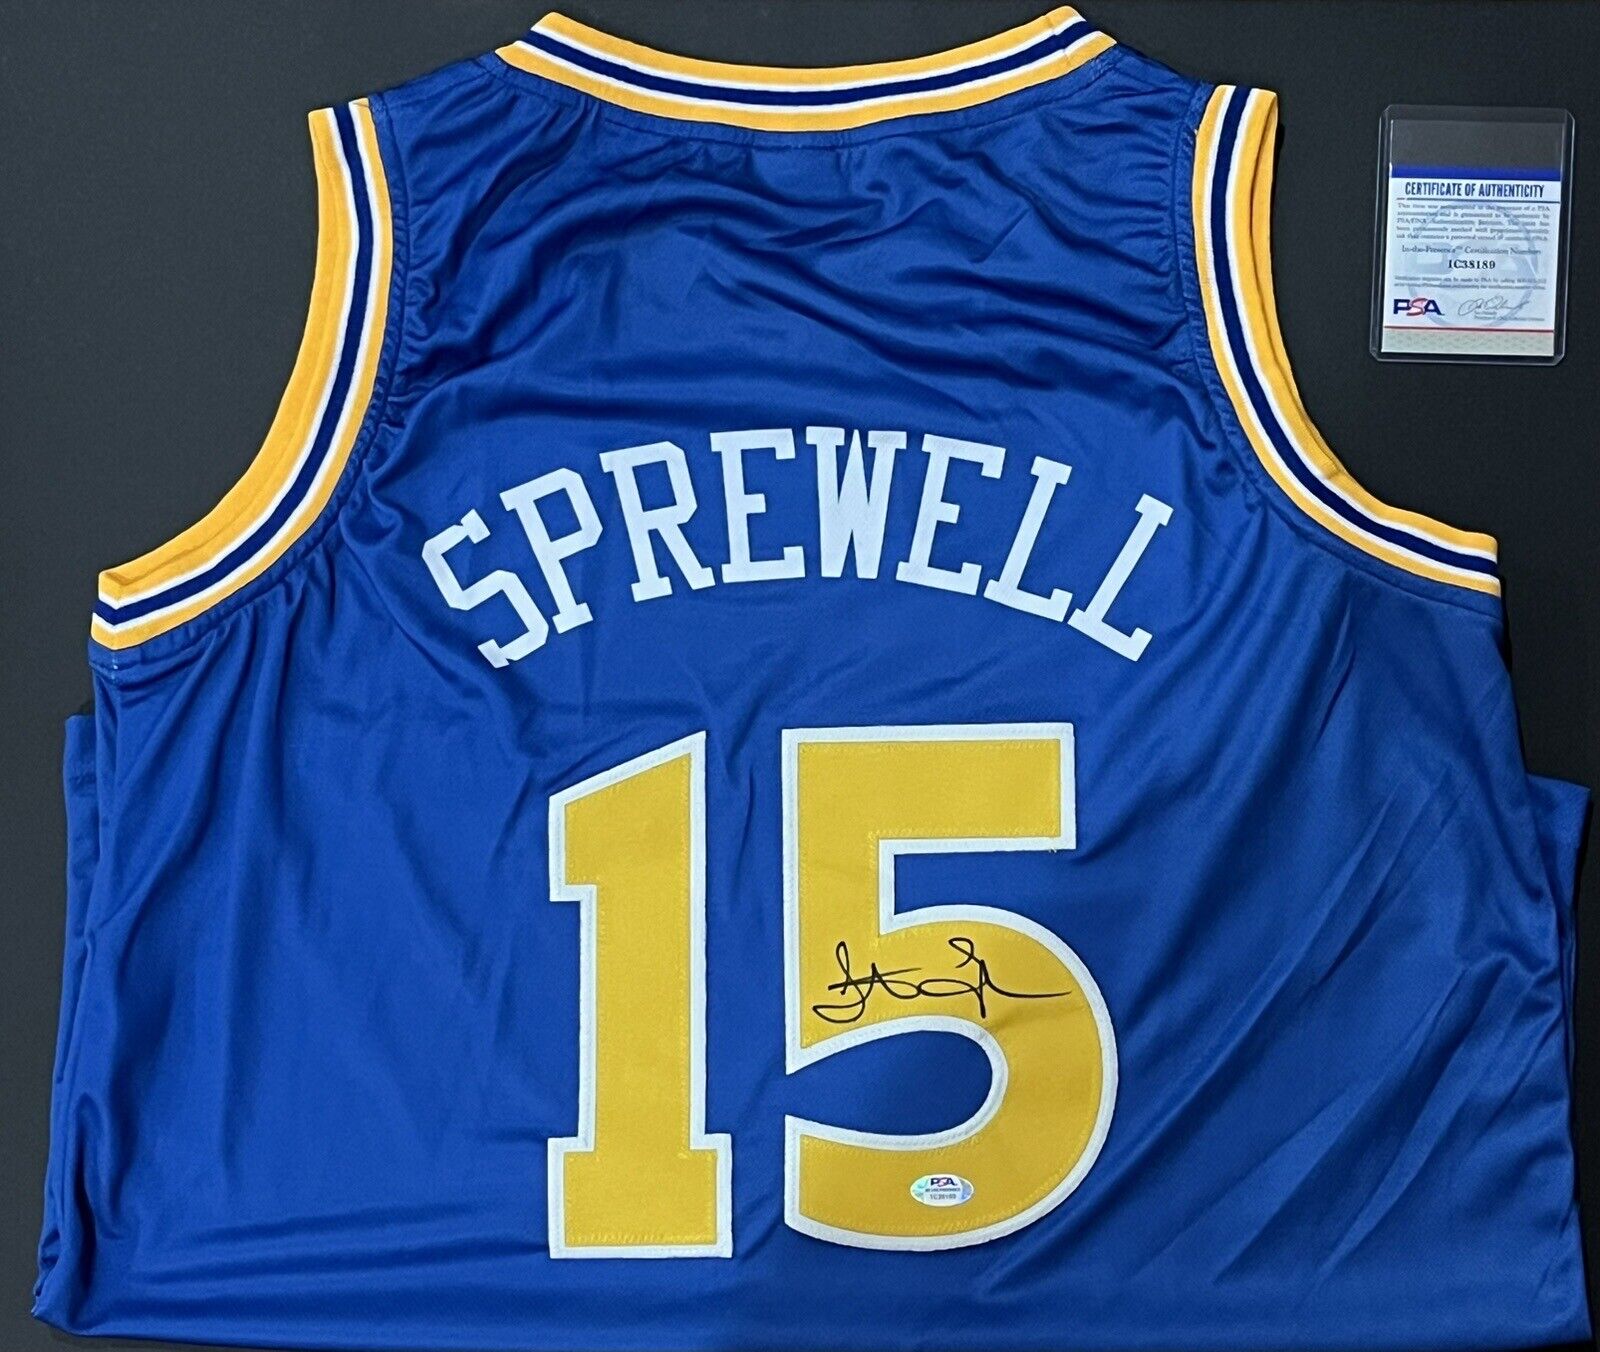 Golden State Warriors Latrell Sprewell Signed Basketball Jersey AUTO XL PSA COA